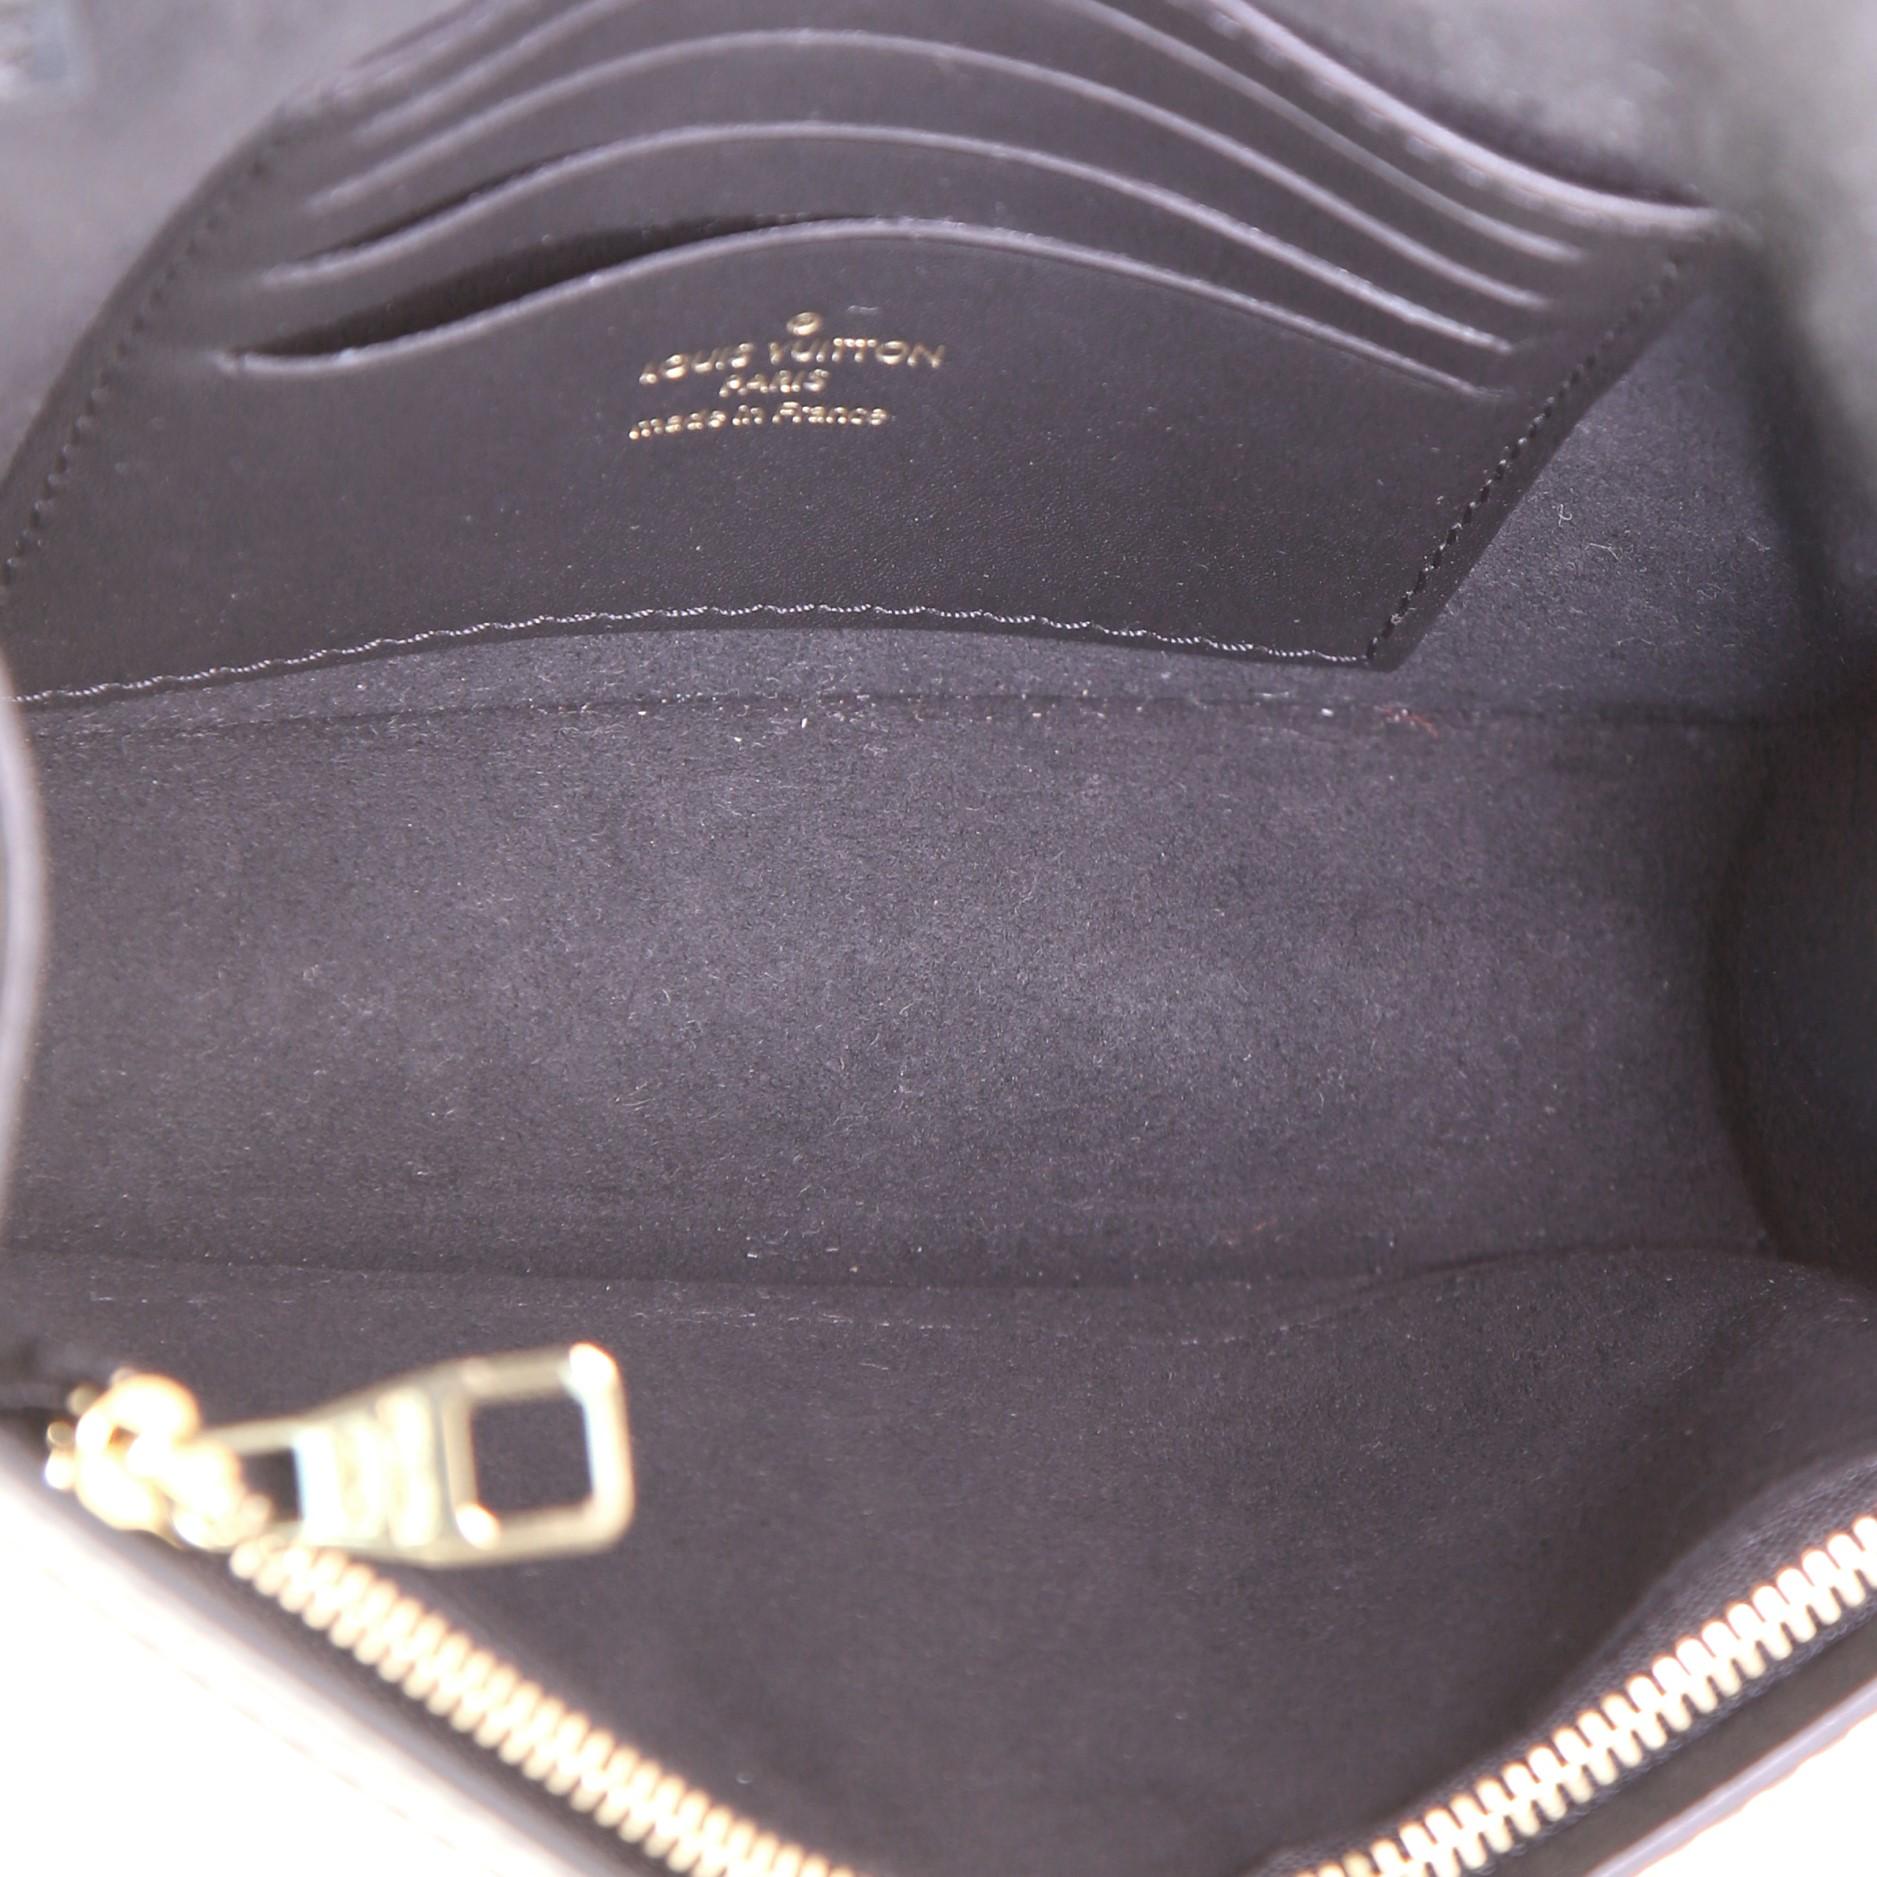 Black Louis Vuitton Dauphine Chain Wallet Limited Edition Since 1854 Monogram J